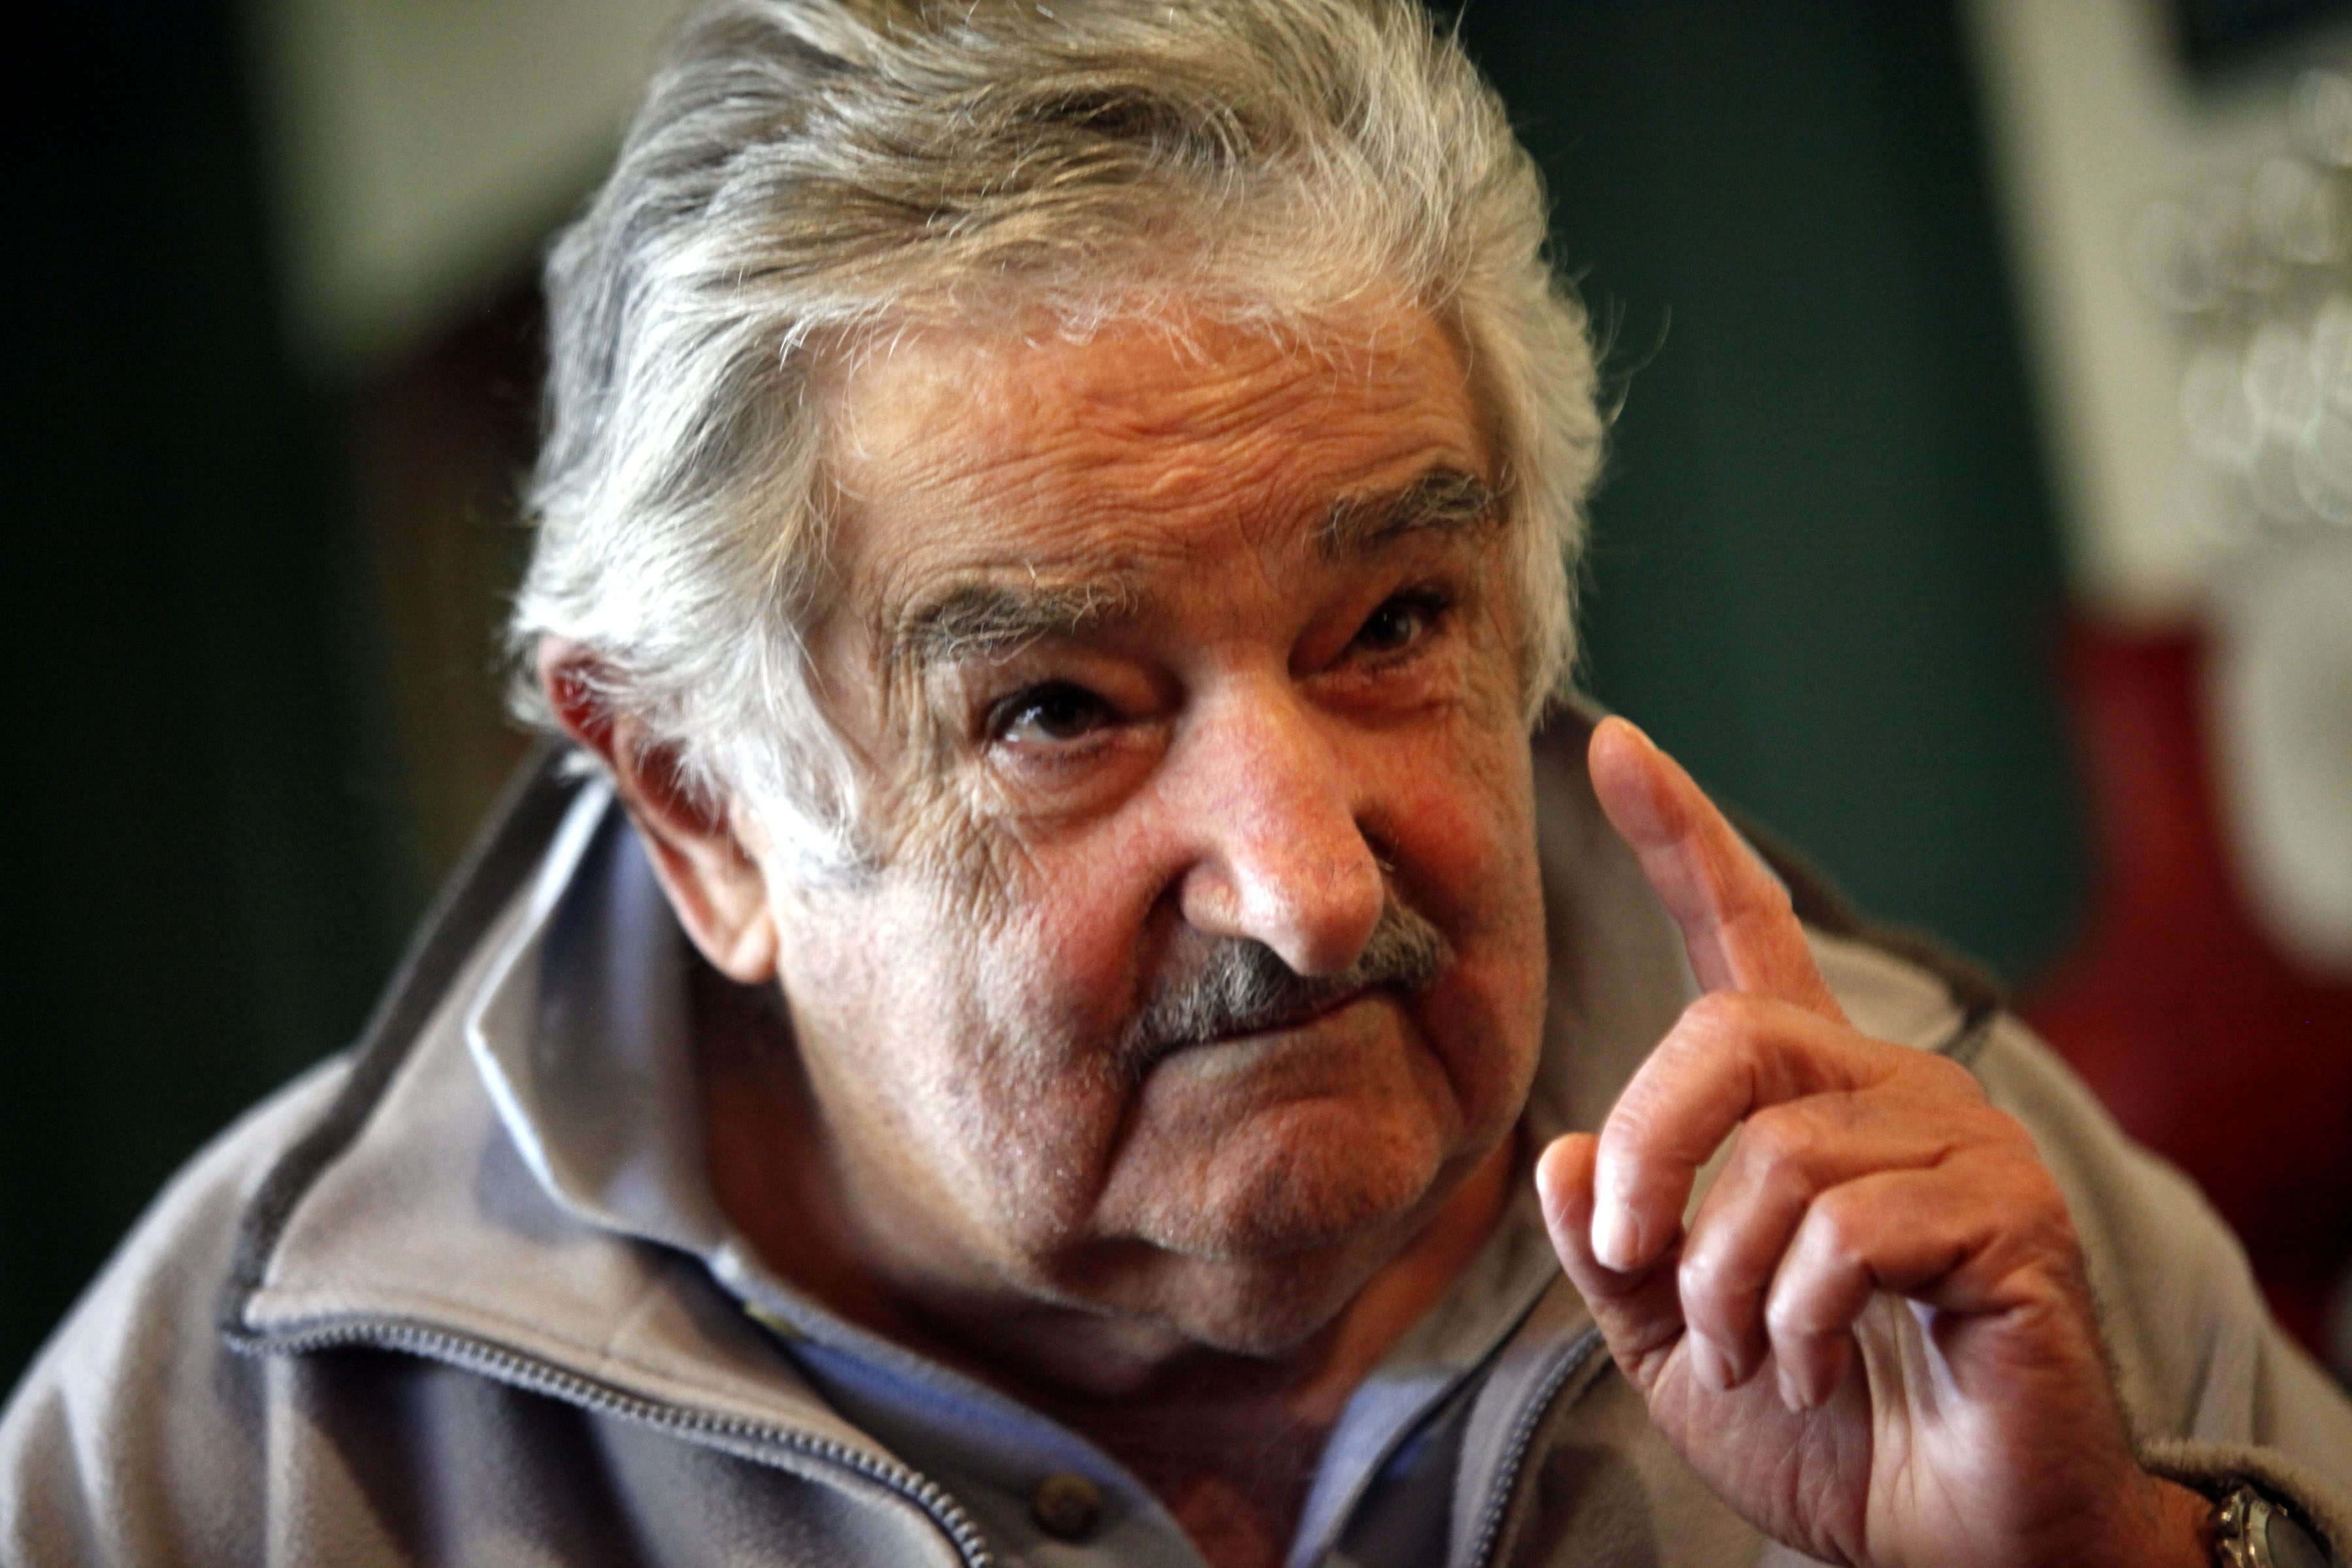 La decisión del Parlamento de Brasil es un “dramático remiendo”, afirmó Mujica.